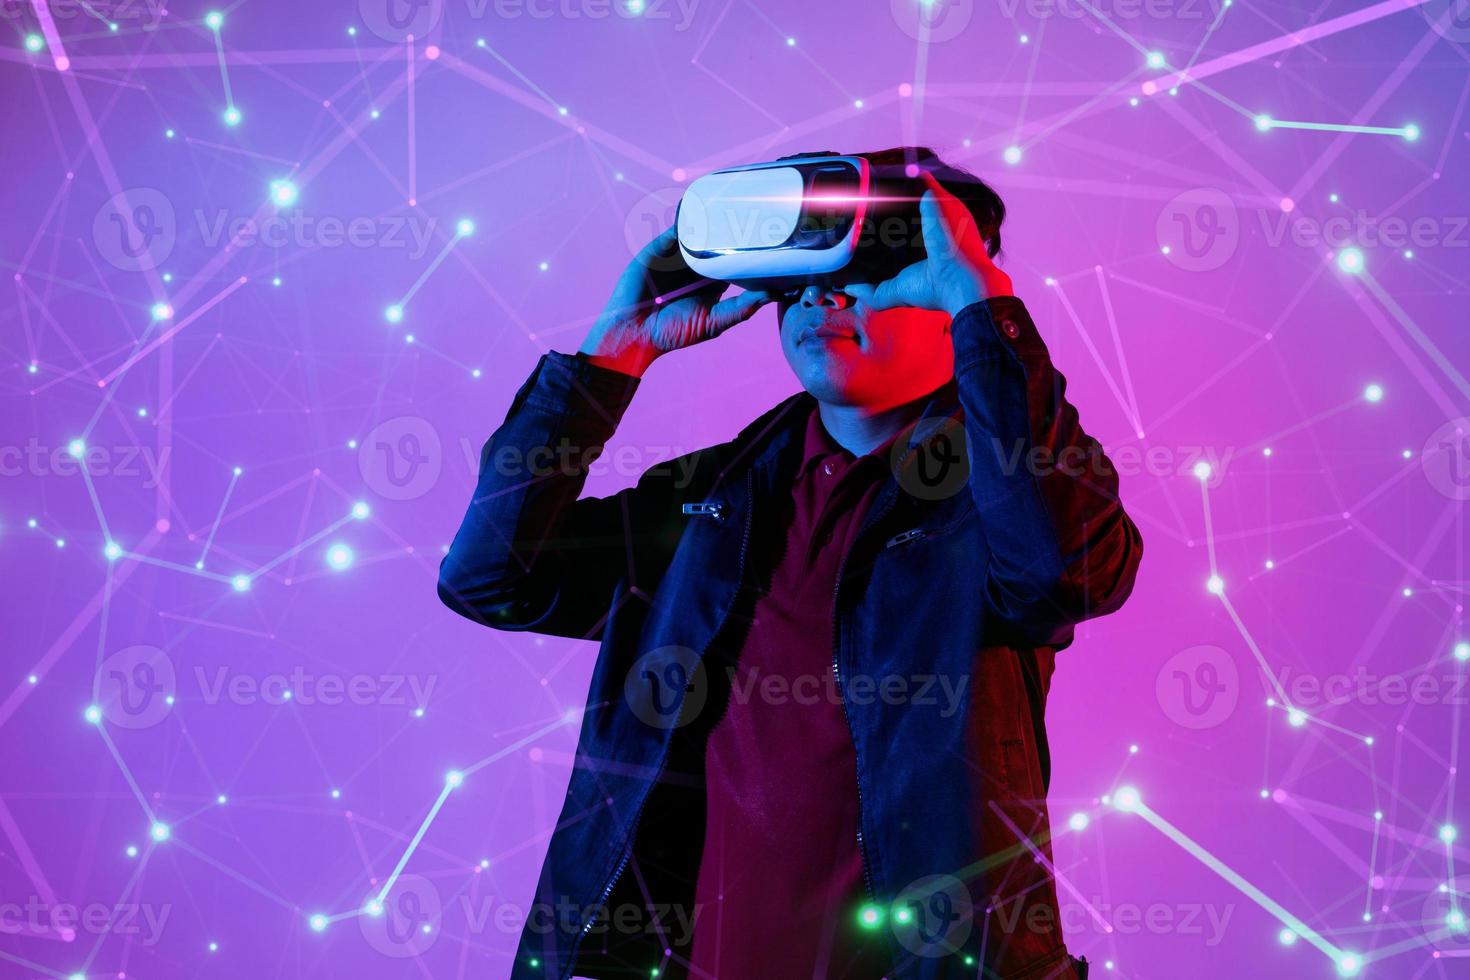 metaverse digitale cyberwereldtechnologie, man met virtual reality vr-bril die augmented reality-game en entertainment speelt foto